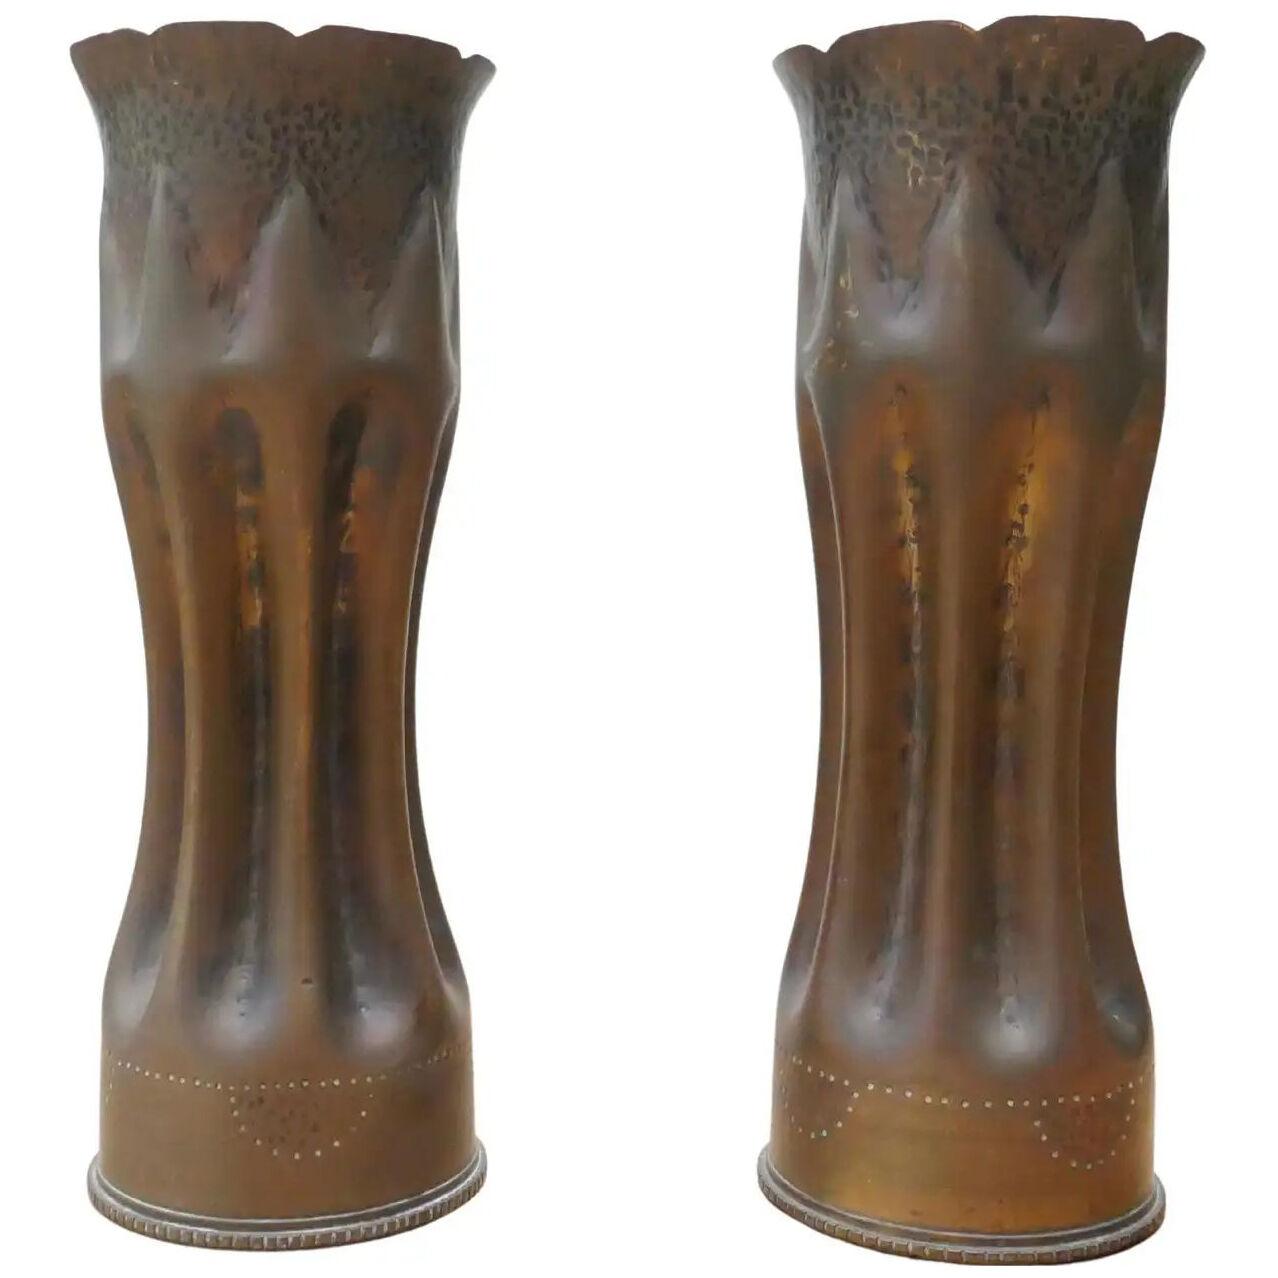 Pair of World War I Brass Trench Art Shells/Vases, France